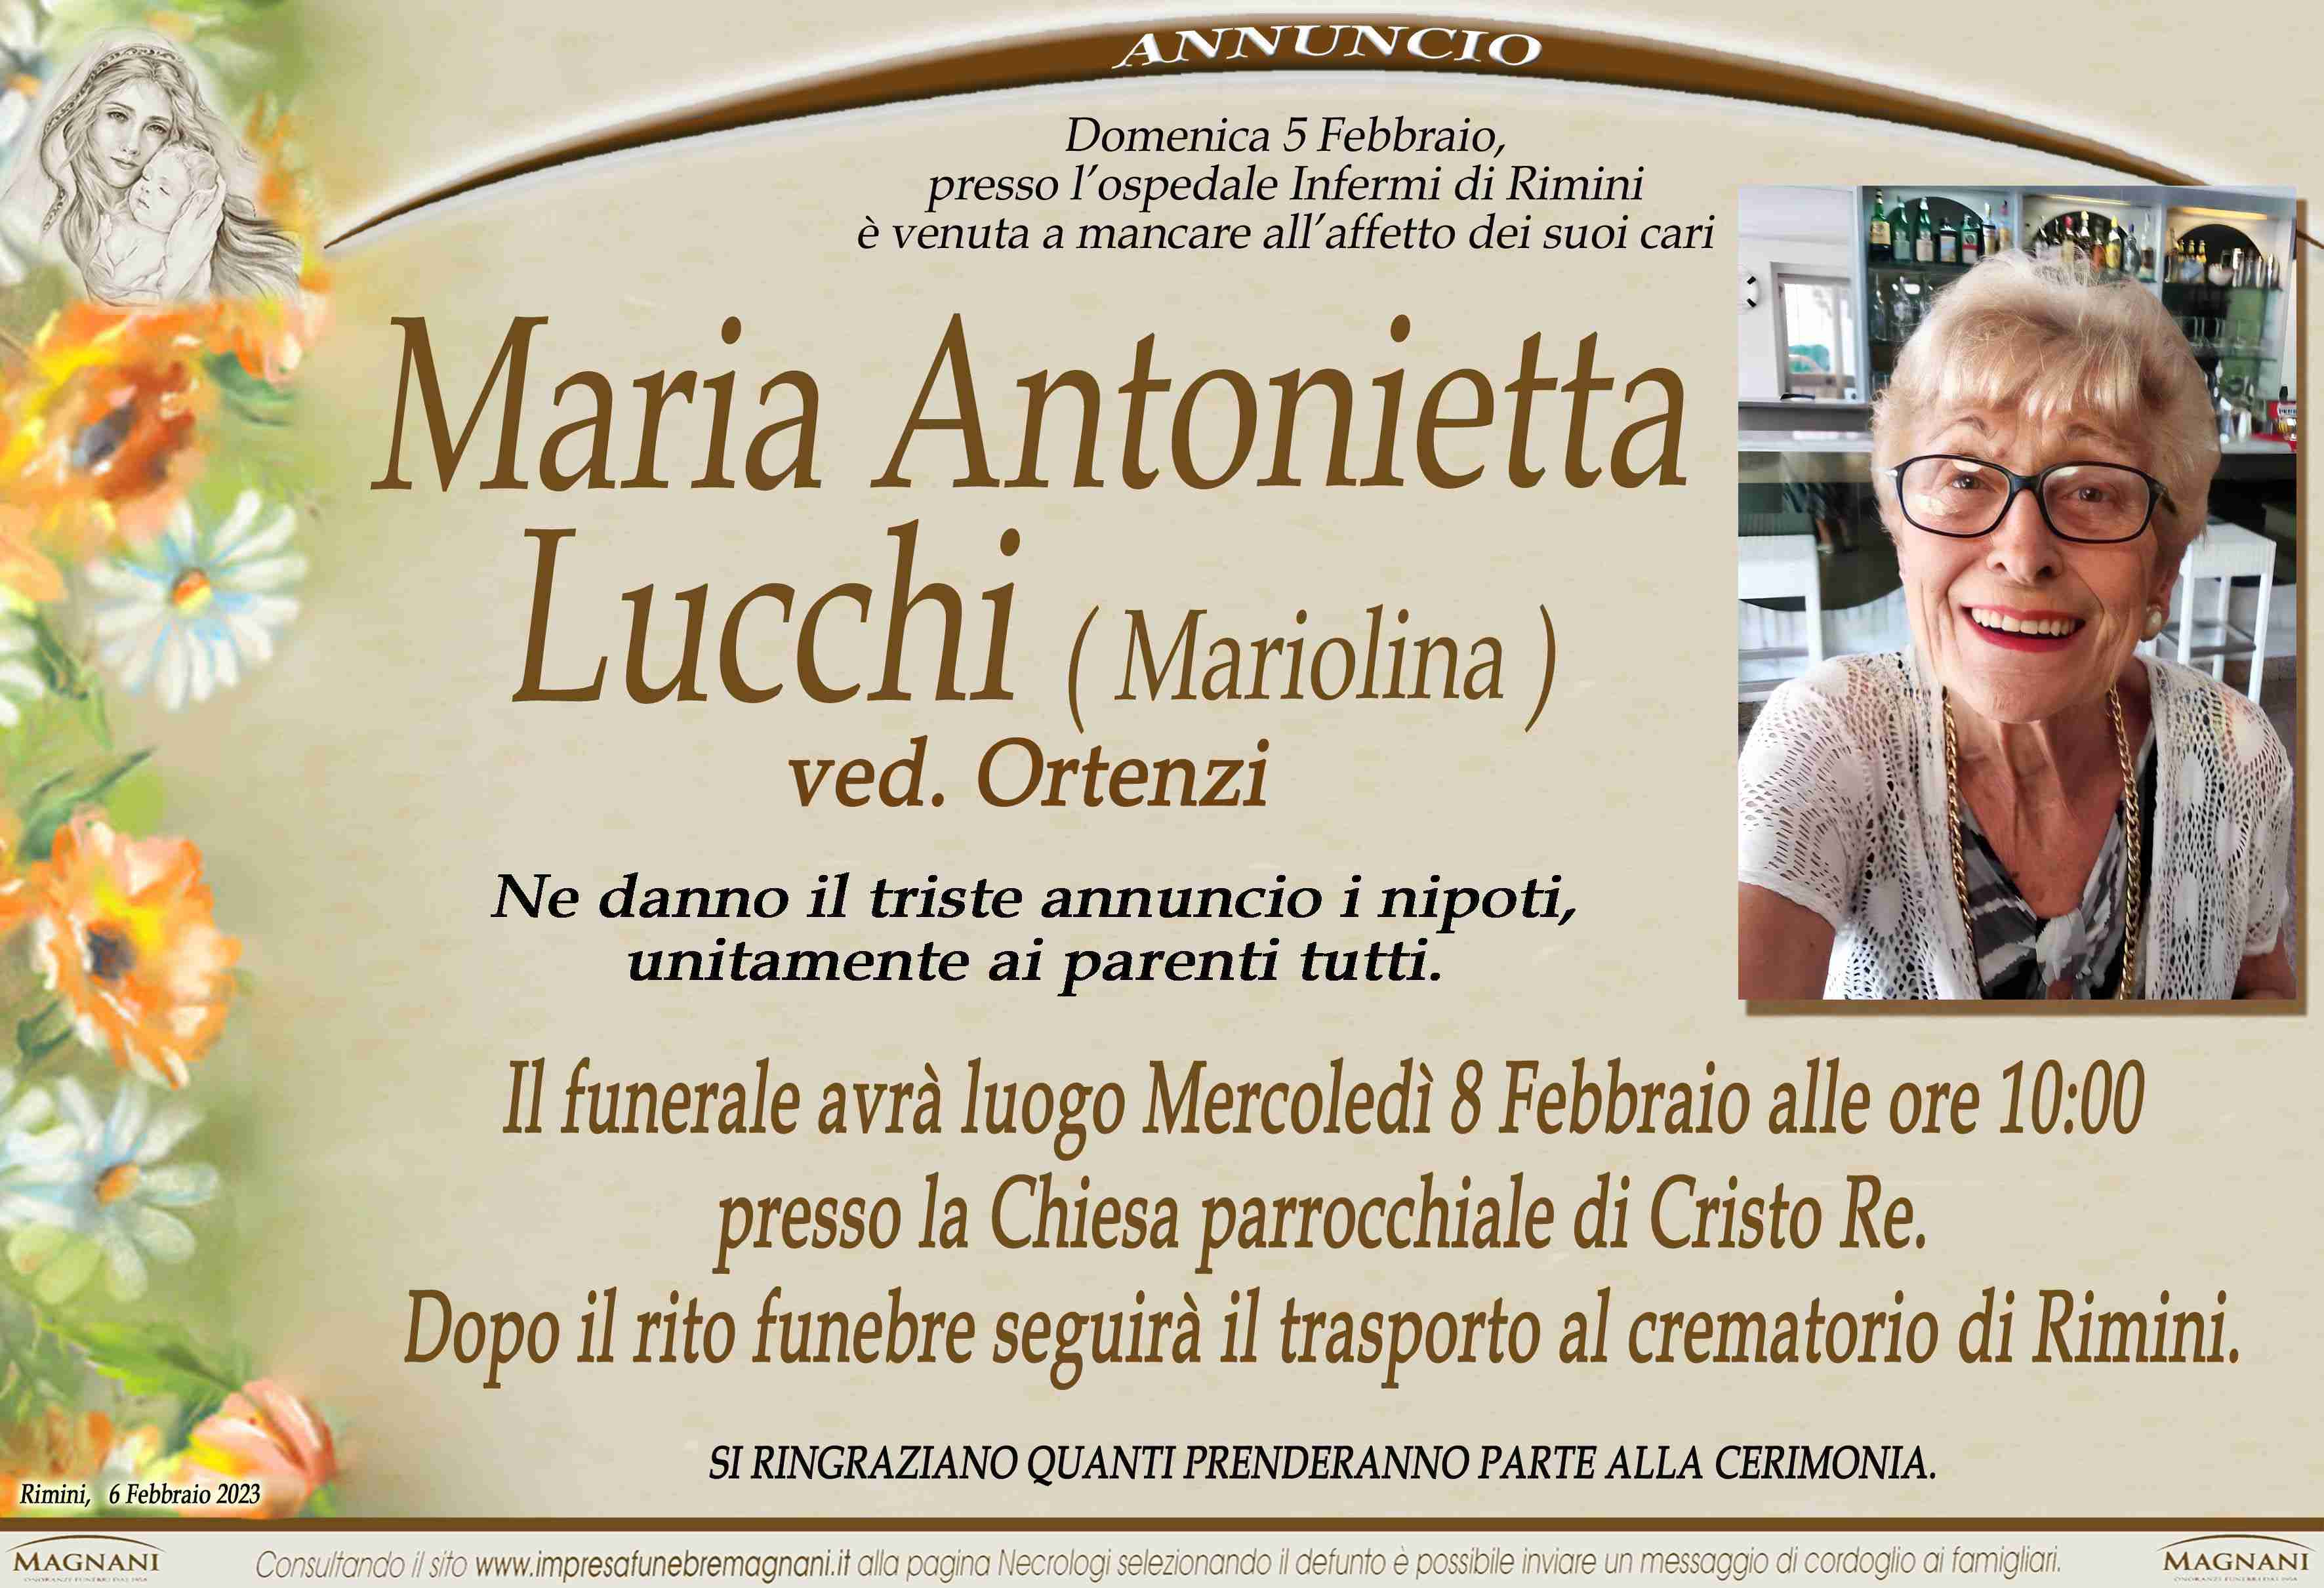 Maria Antonietta Lucchi